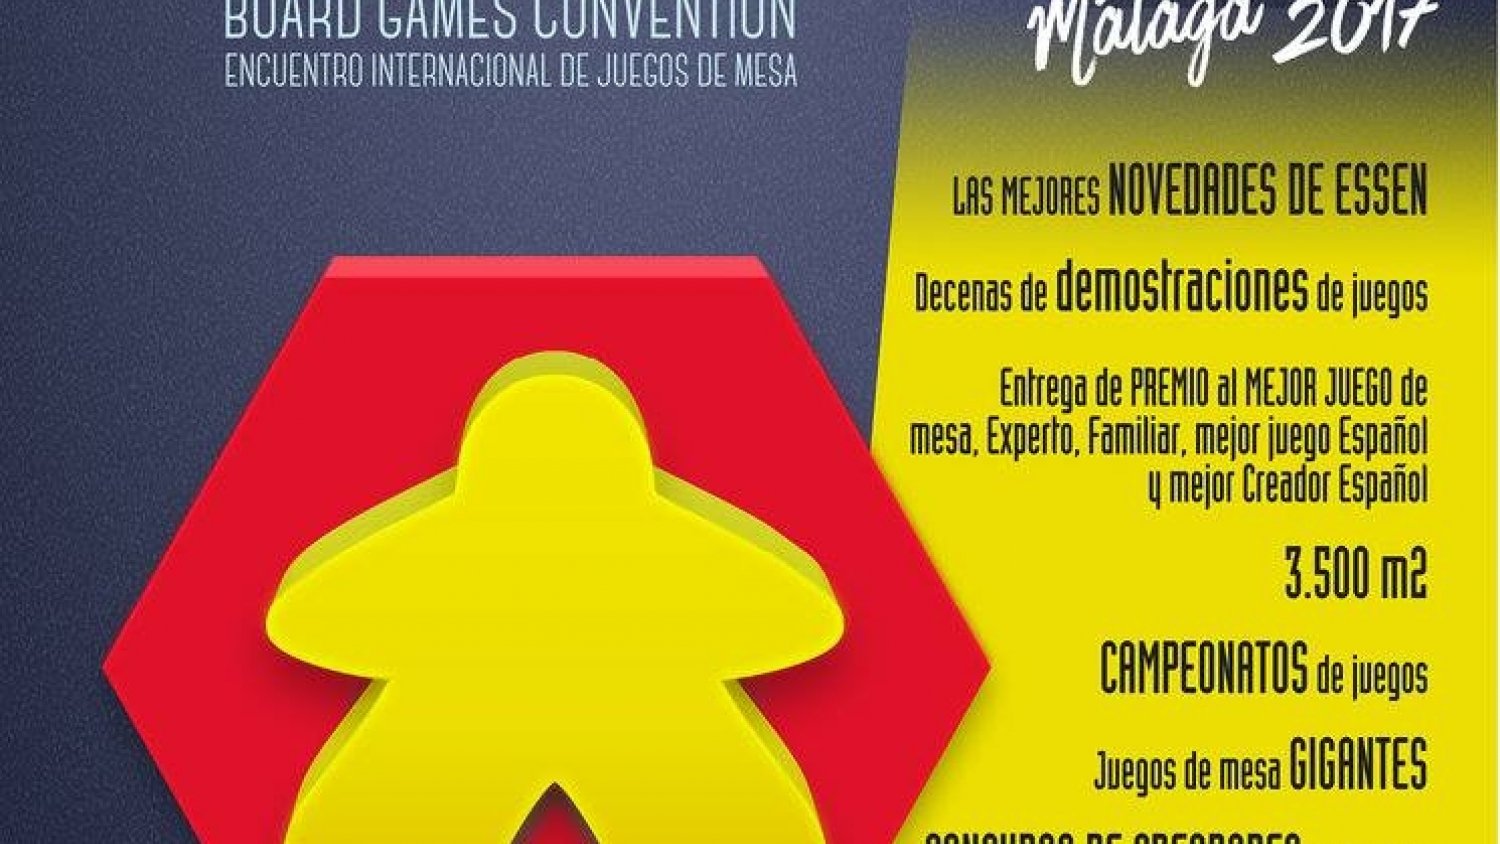 La Térmica acoge la primera edición de 'Board Game Convention'